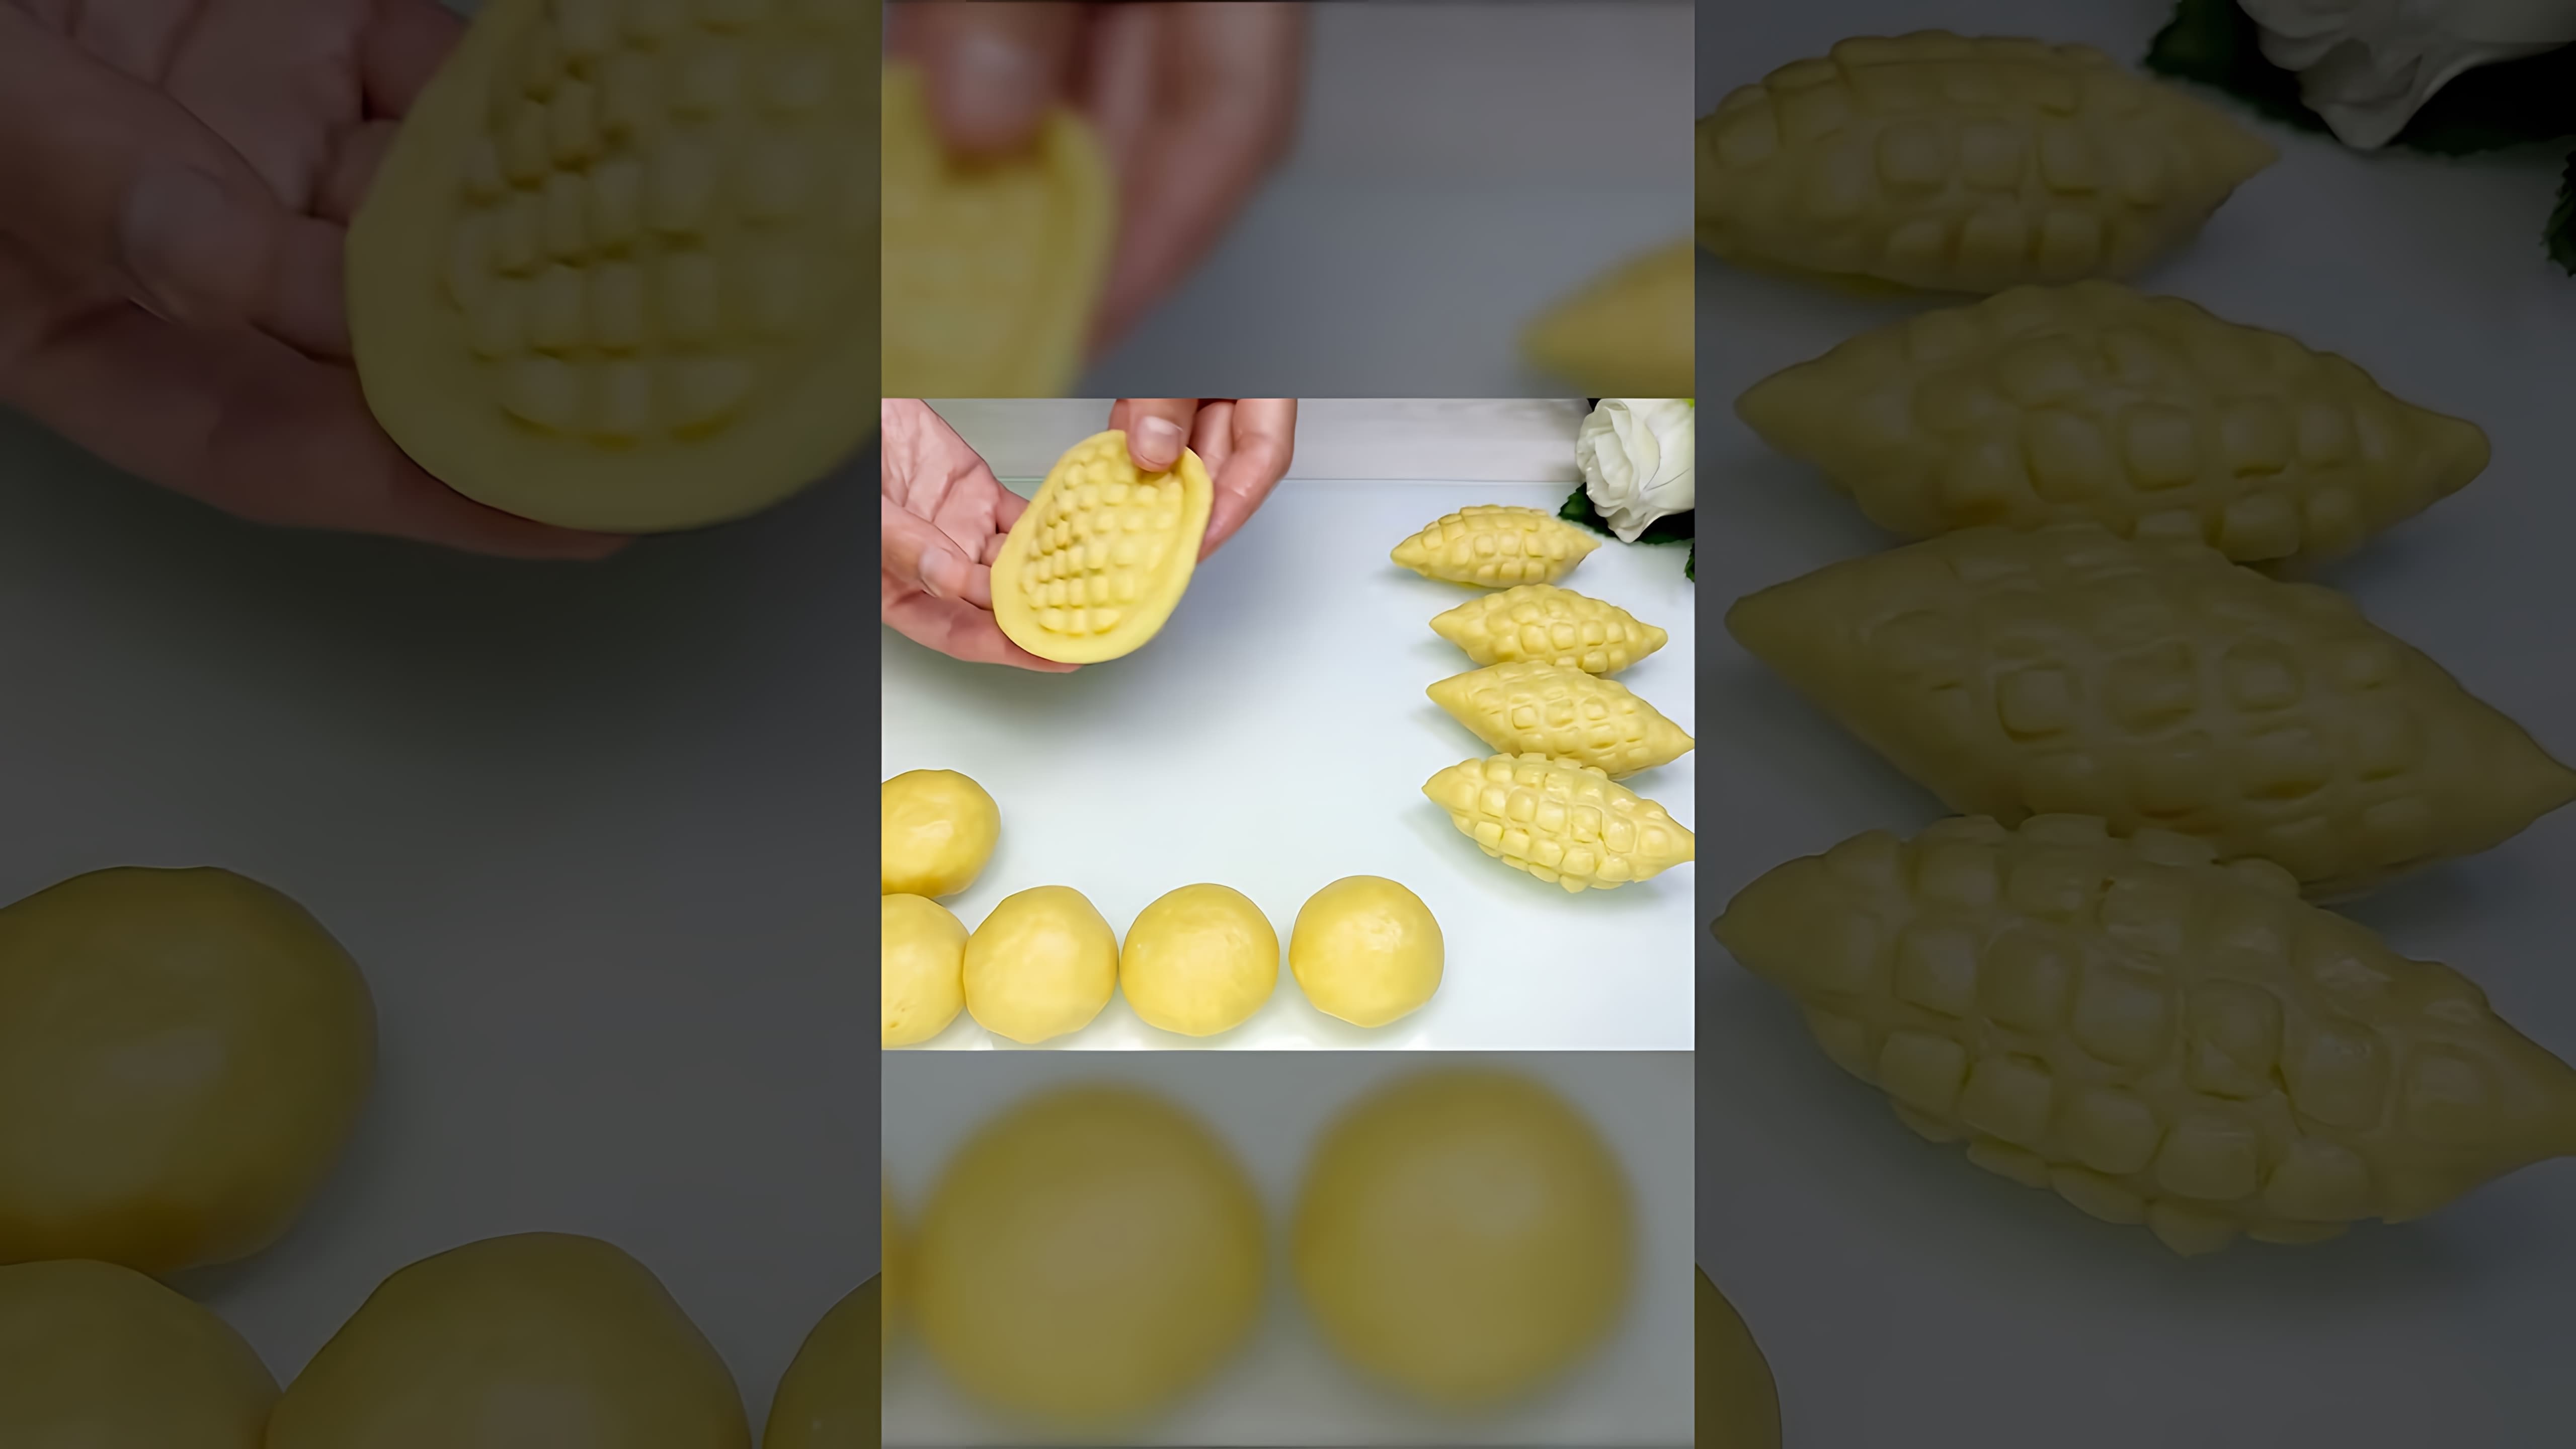 Заголовок: "Как приготовить печенье с орехами и фисташками"

Содержание видео-ролика:

1